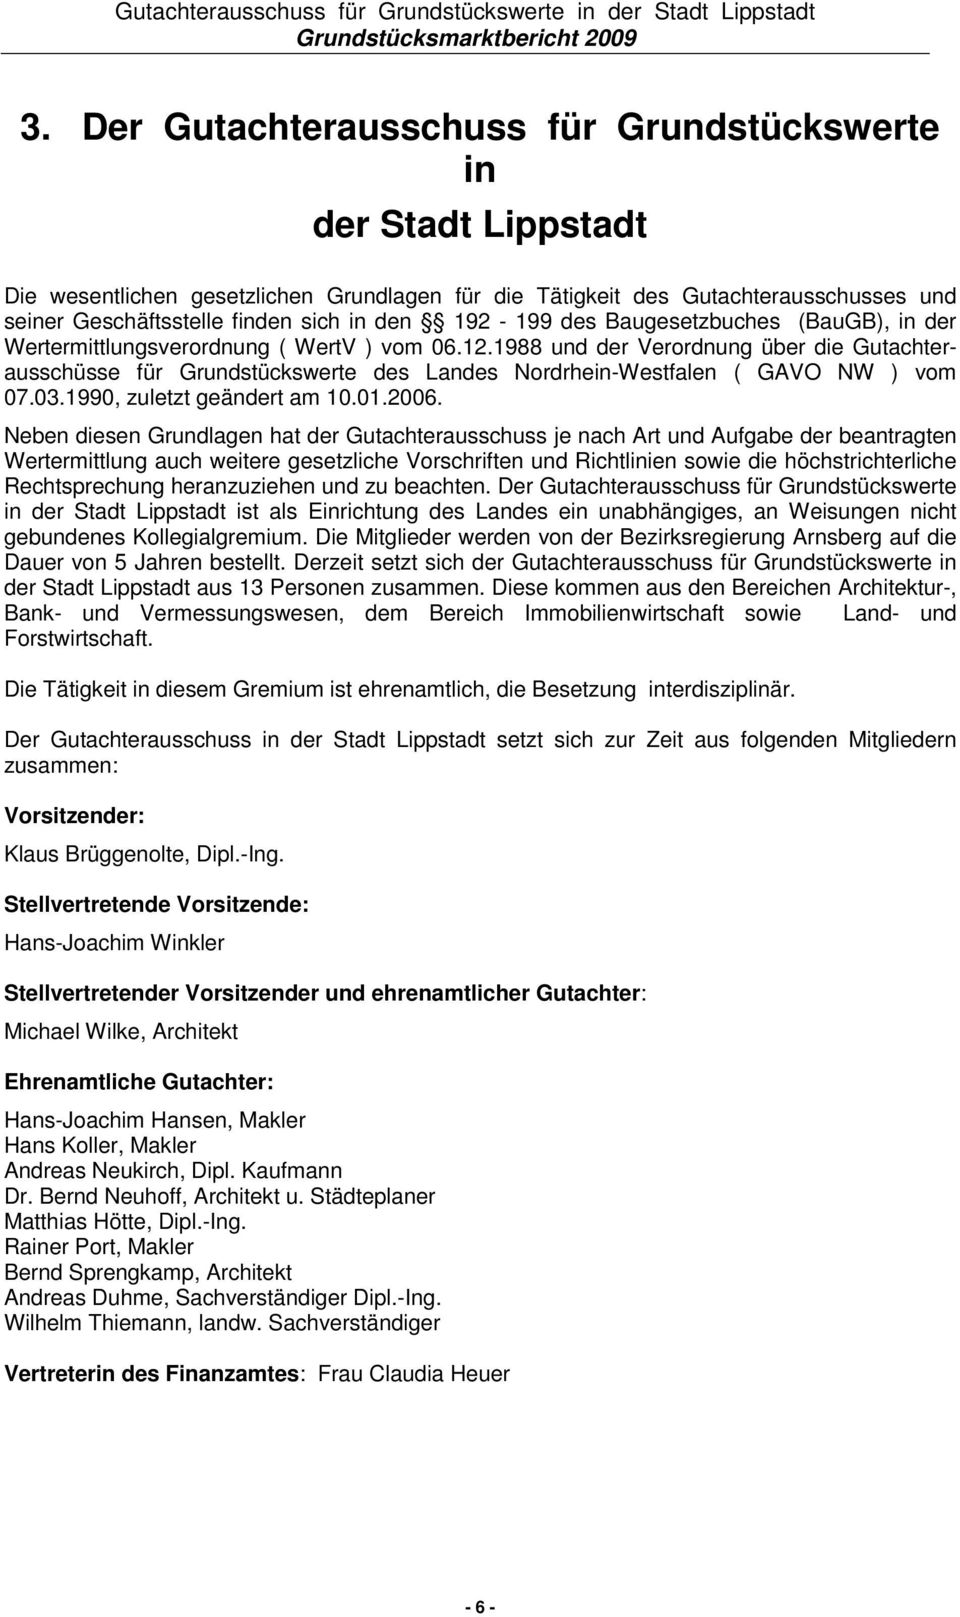 1988 und der Verordnung über die Gutachterausschüsse für Grundstückswerte des Landes Nordrhein-Westfalen ( GAVO NW ) vom 07.03.1990, zuletzt geändert am 10.01.2006.